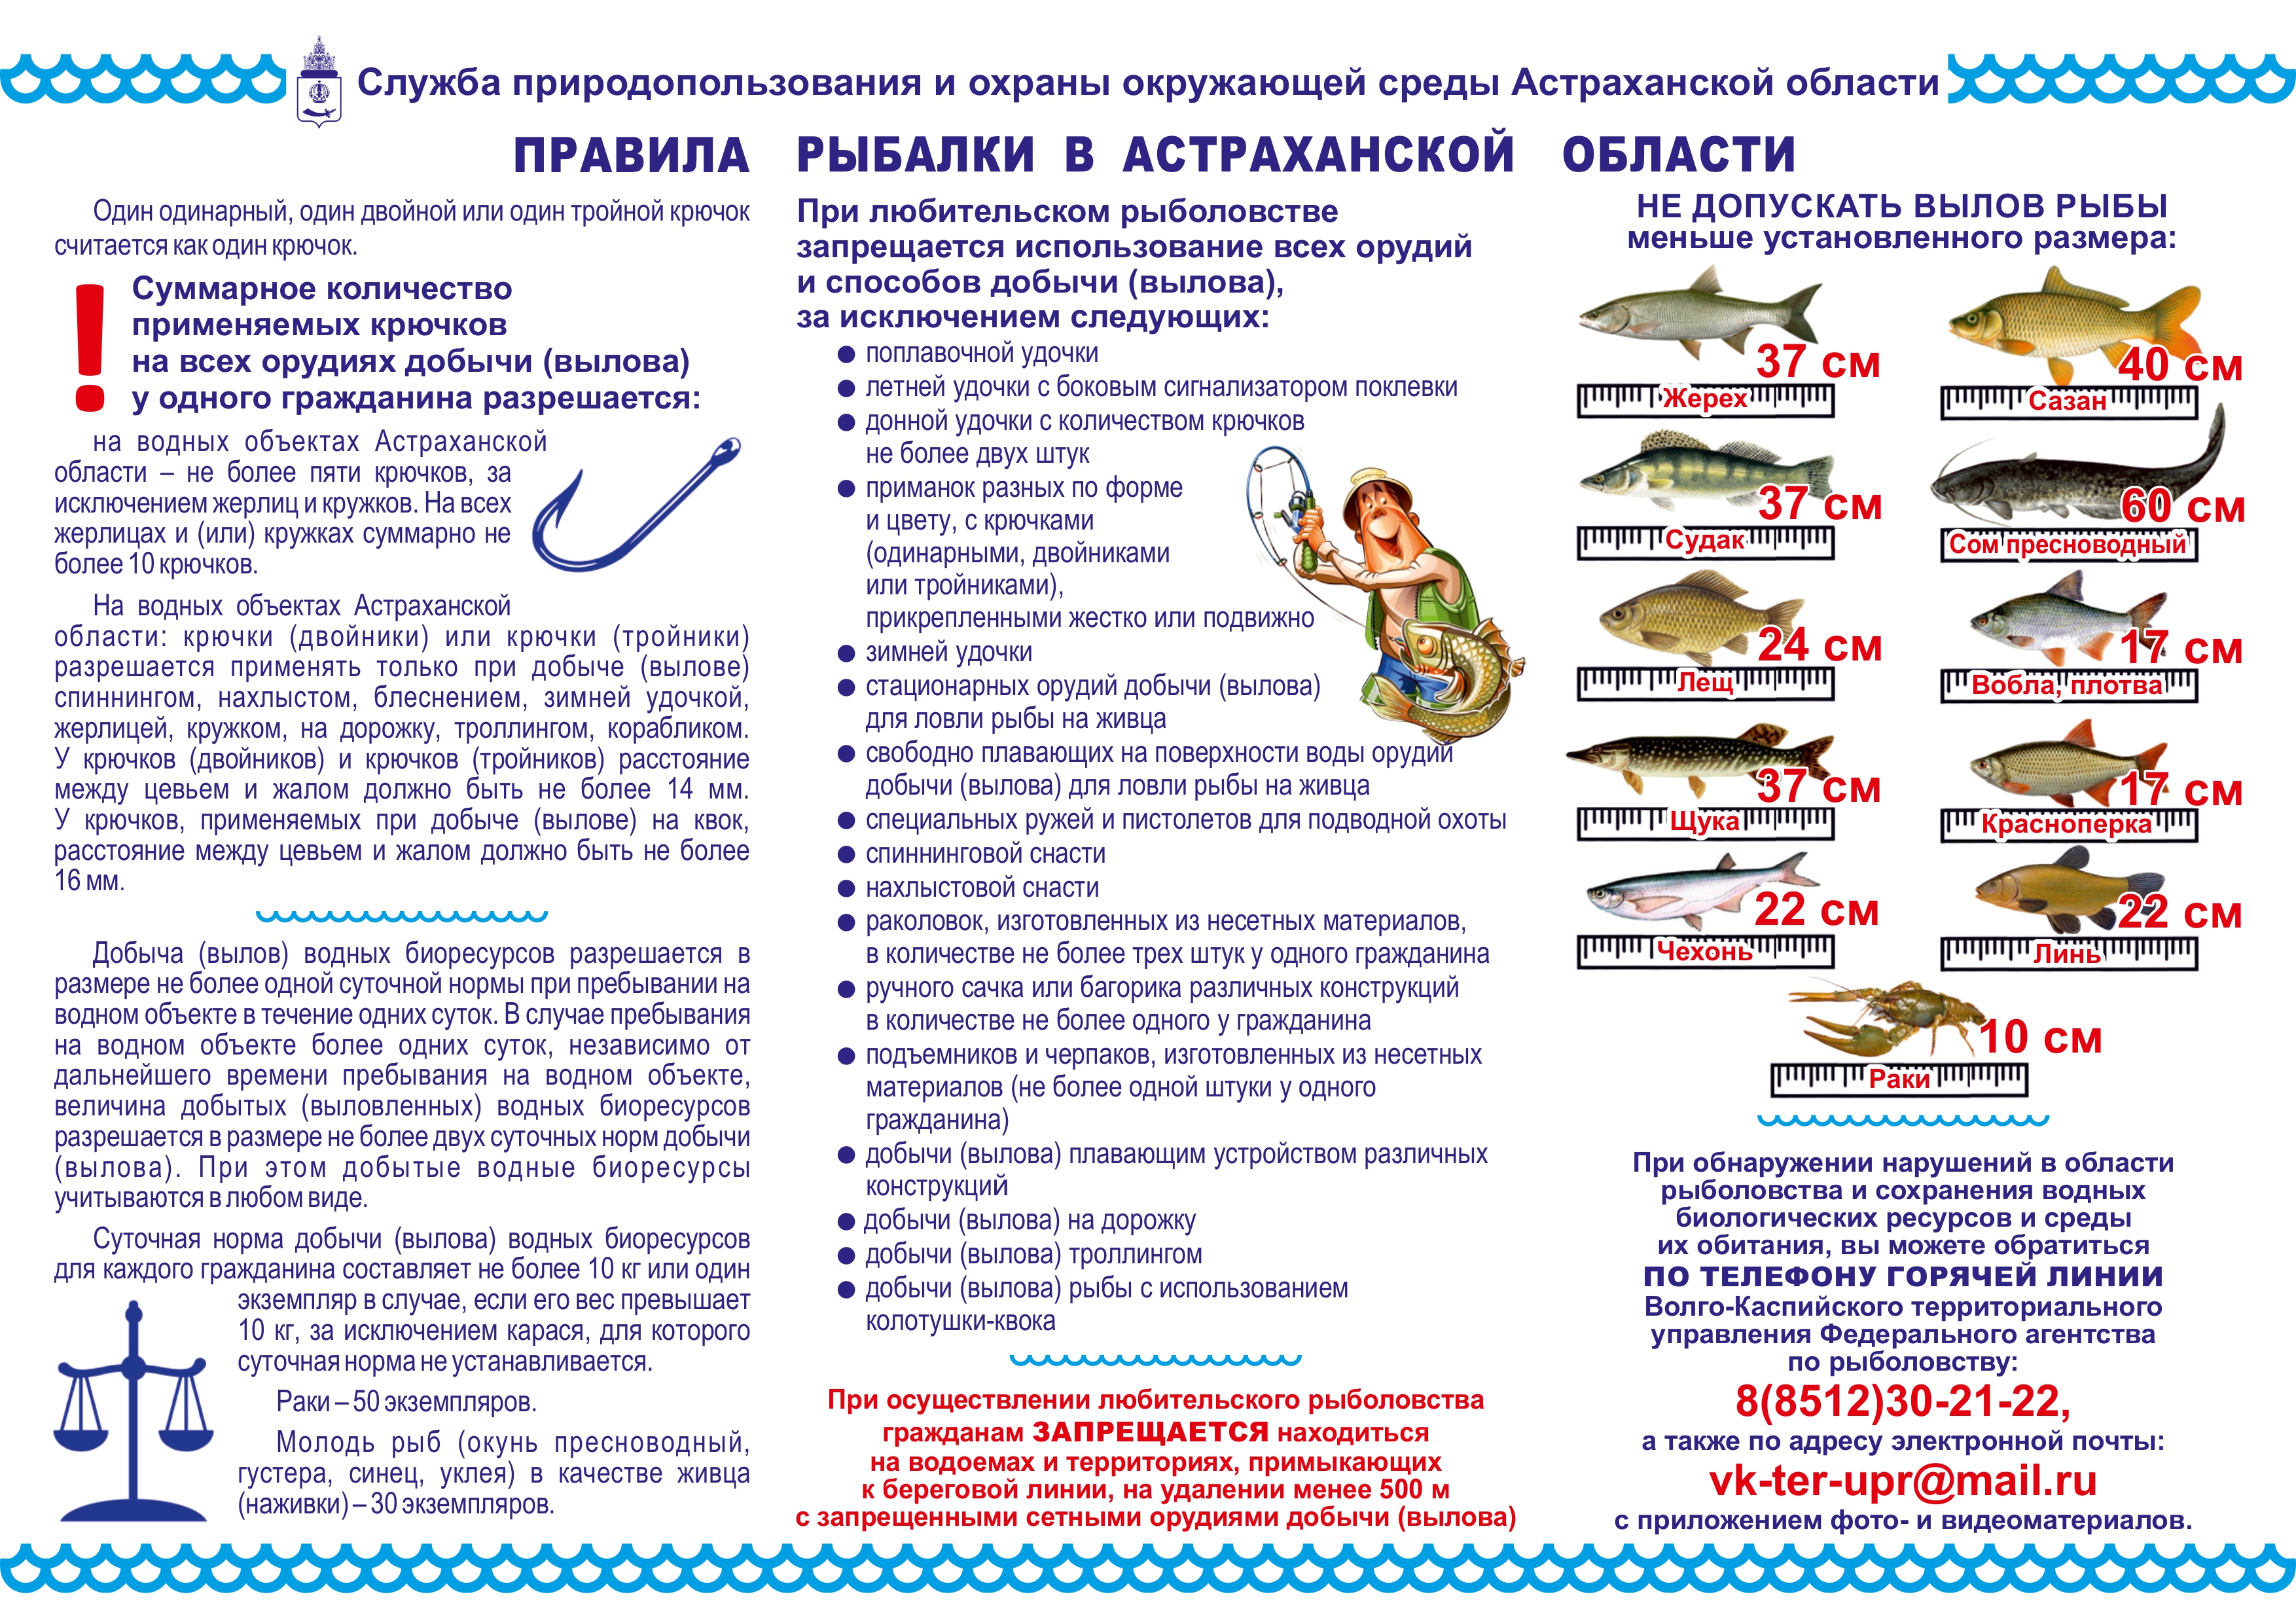 Разрешенный лов рыбы. Норма ловли рыбы в Астраханской области на 2023г. Памятки для рыбаков. Правила рыбалки. Памятка рыбака.